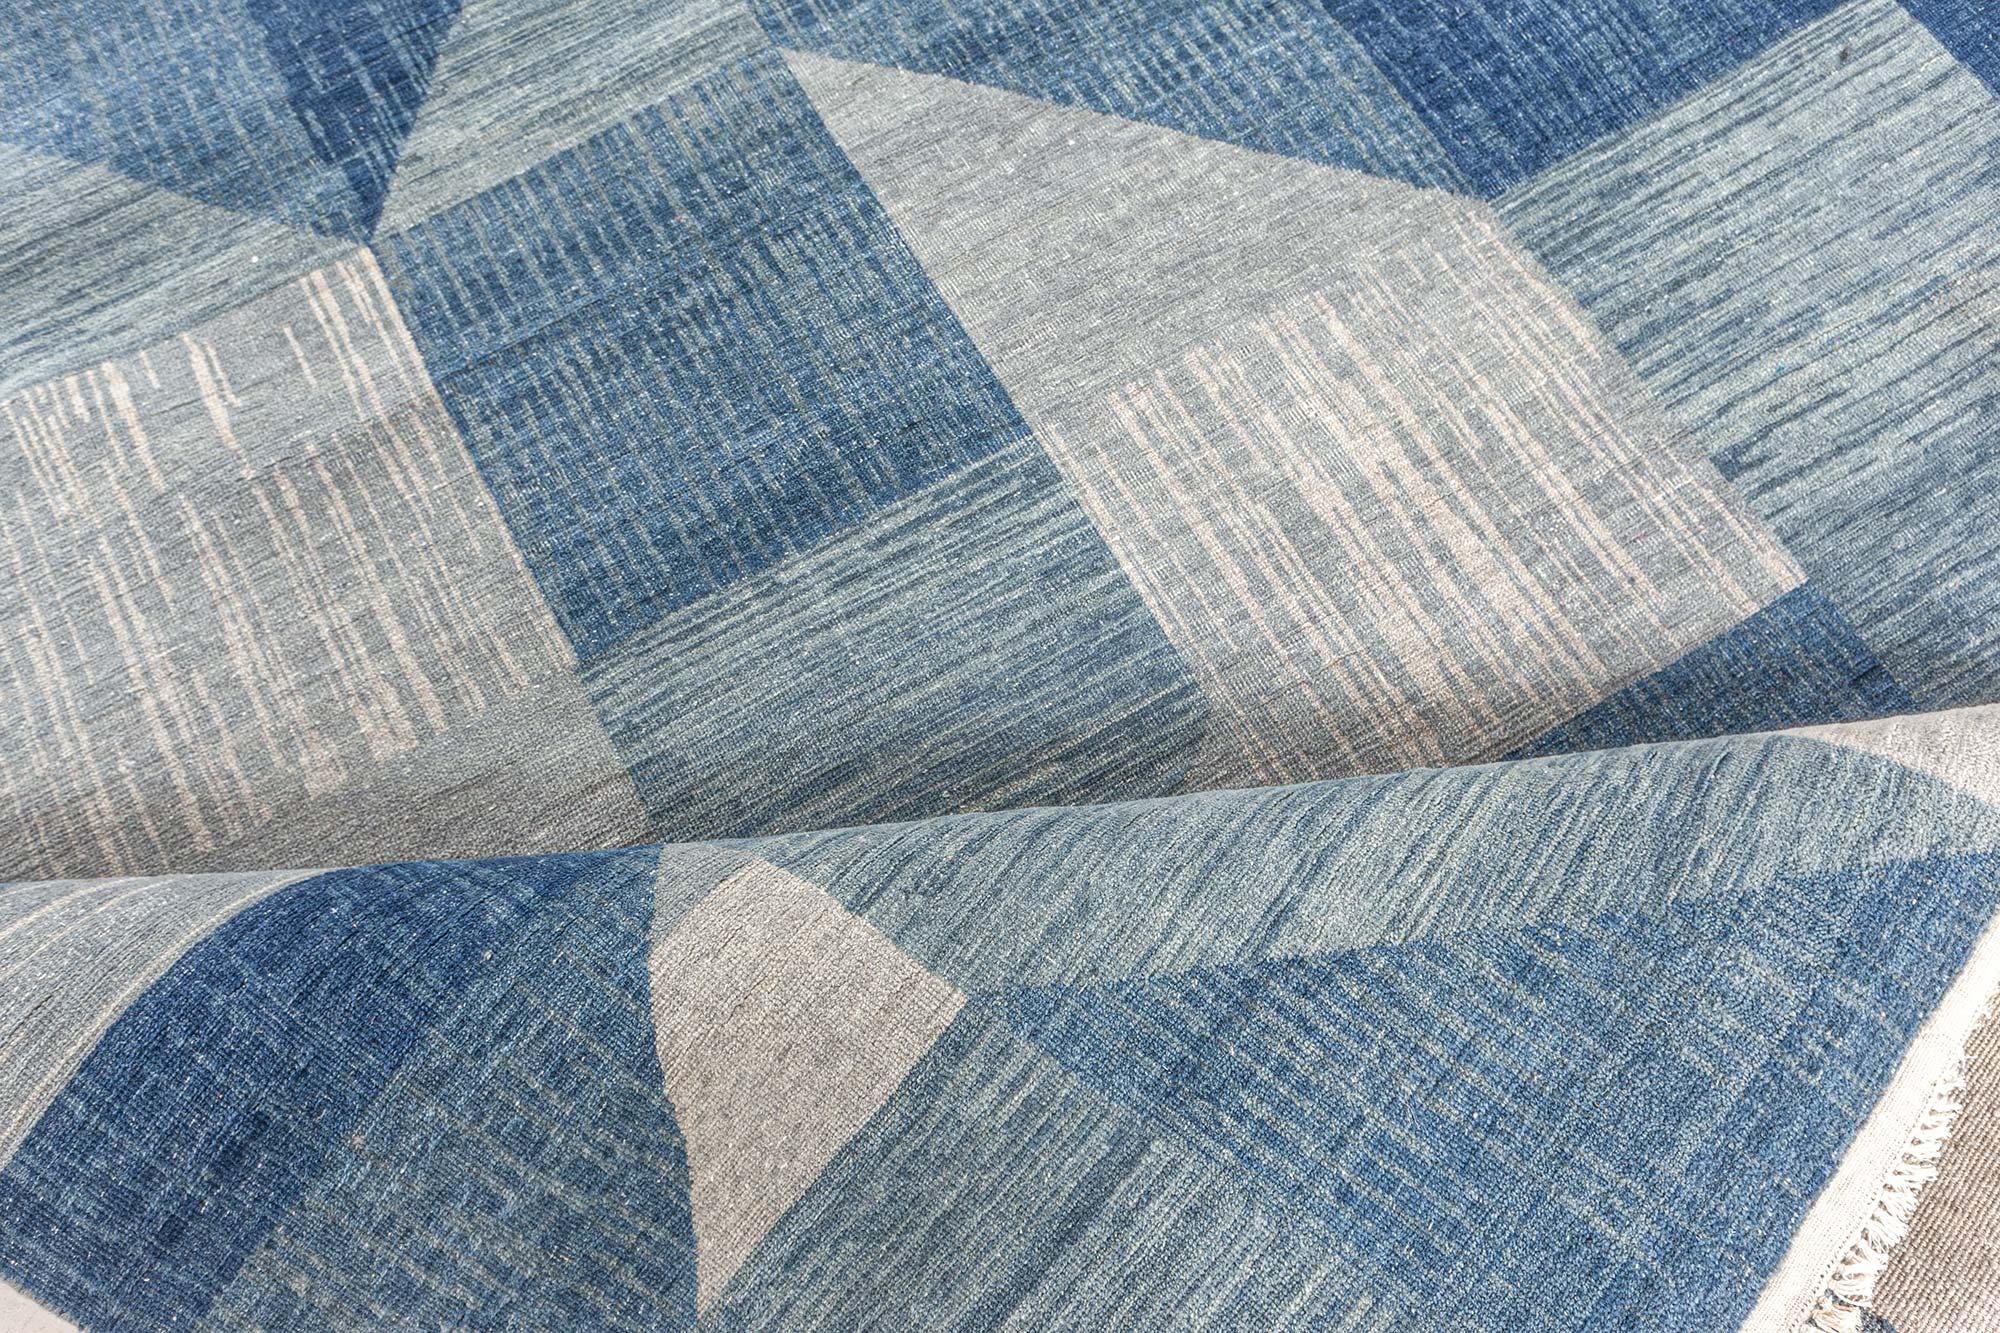 Zeitgenössischer geometrischer Teppich von Doris Leslie Blau.
Größe: 11'10